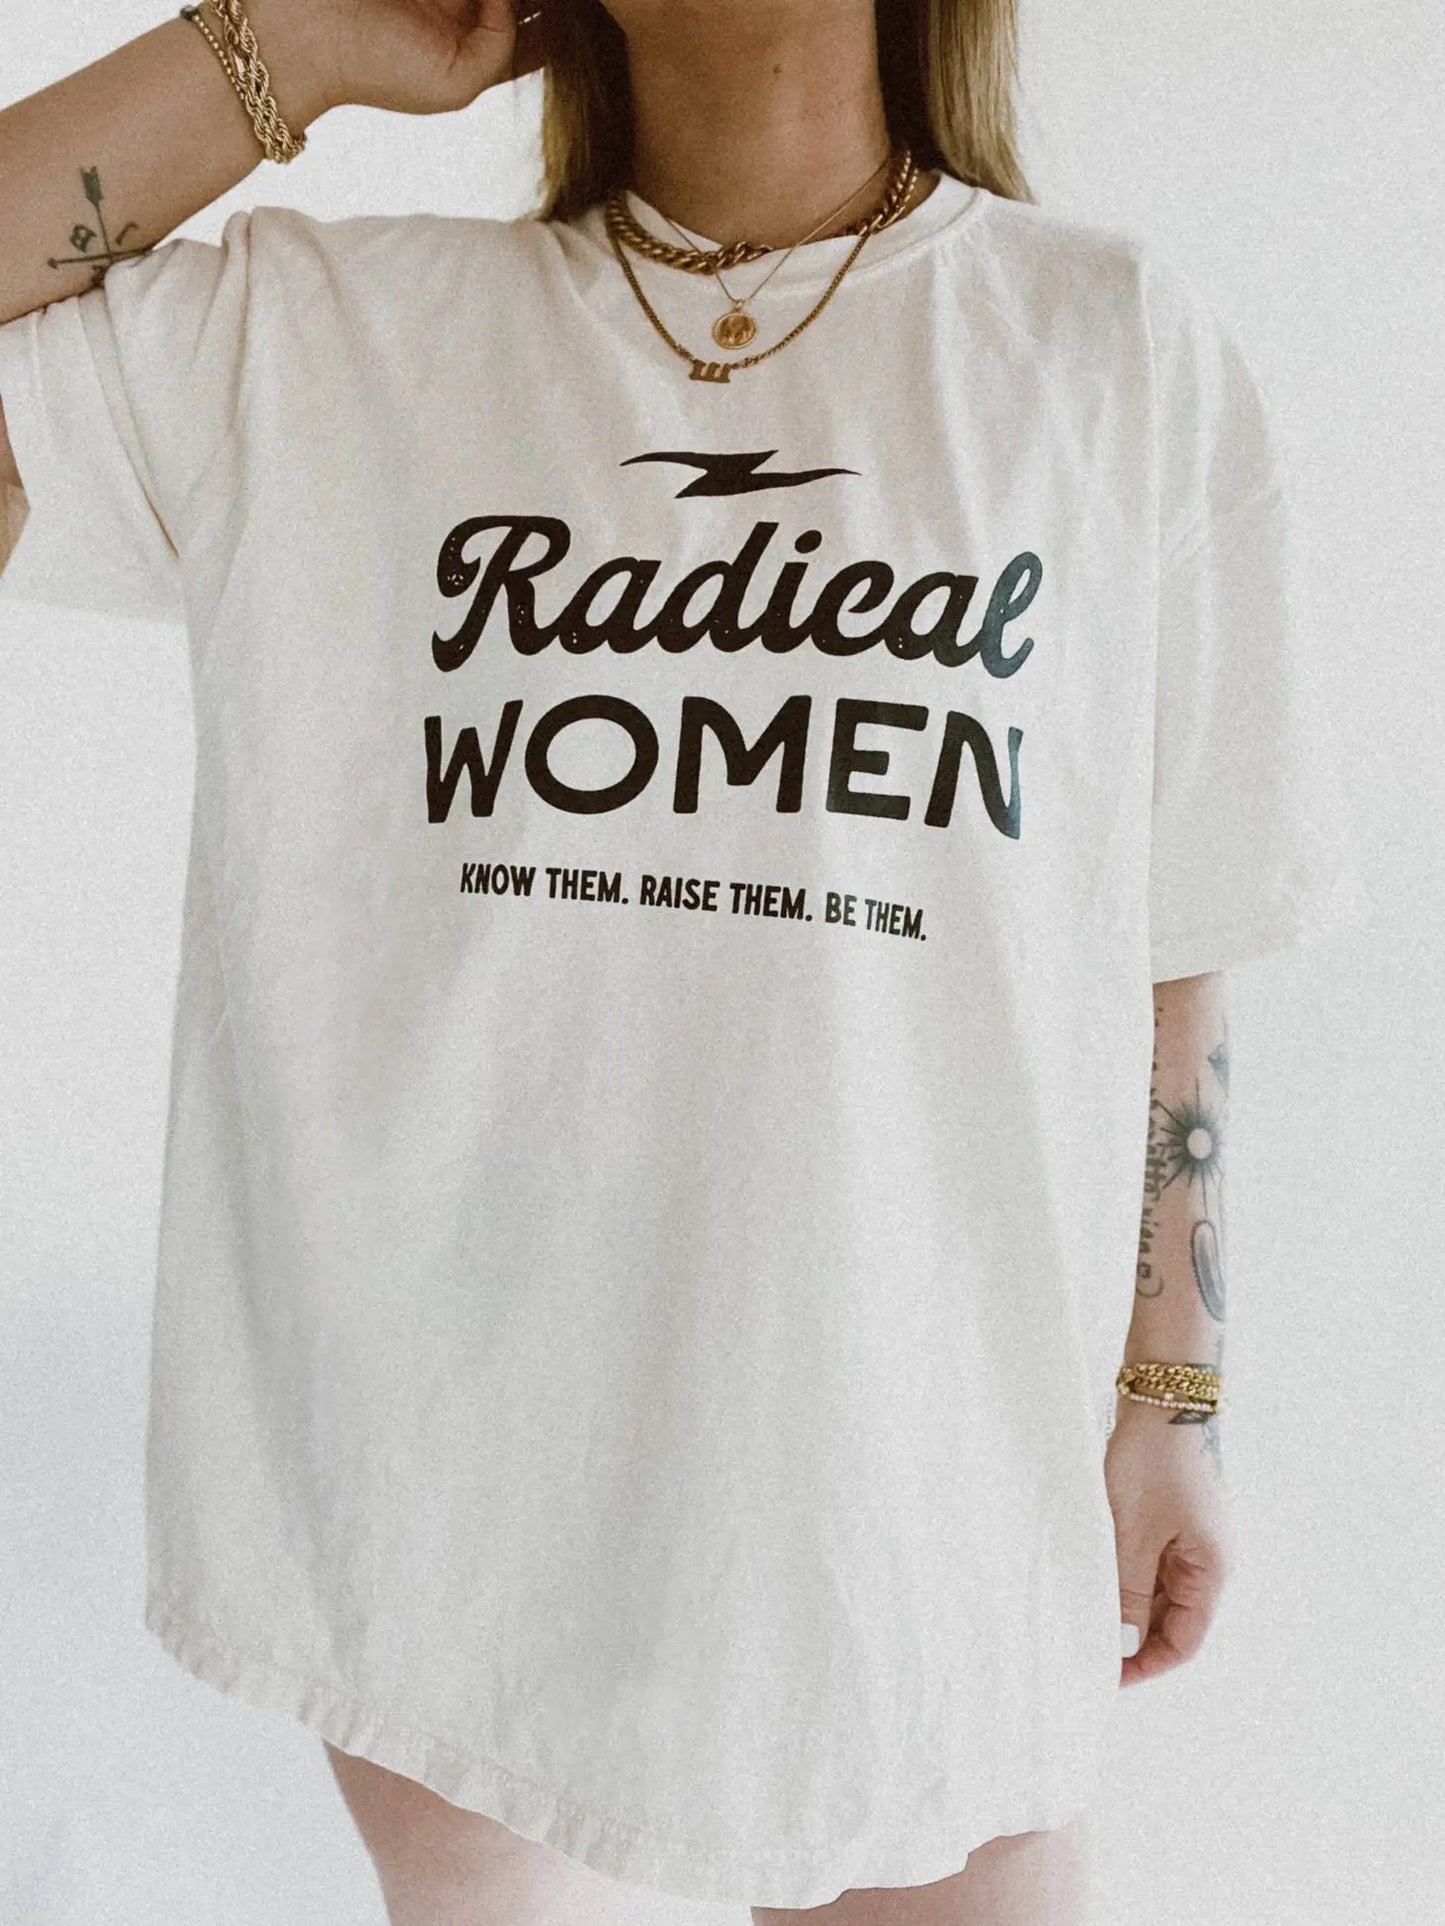 Radical Women Tee